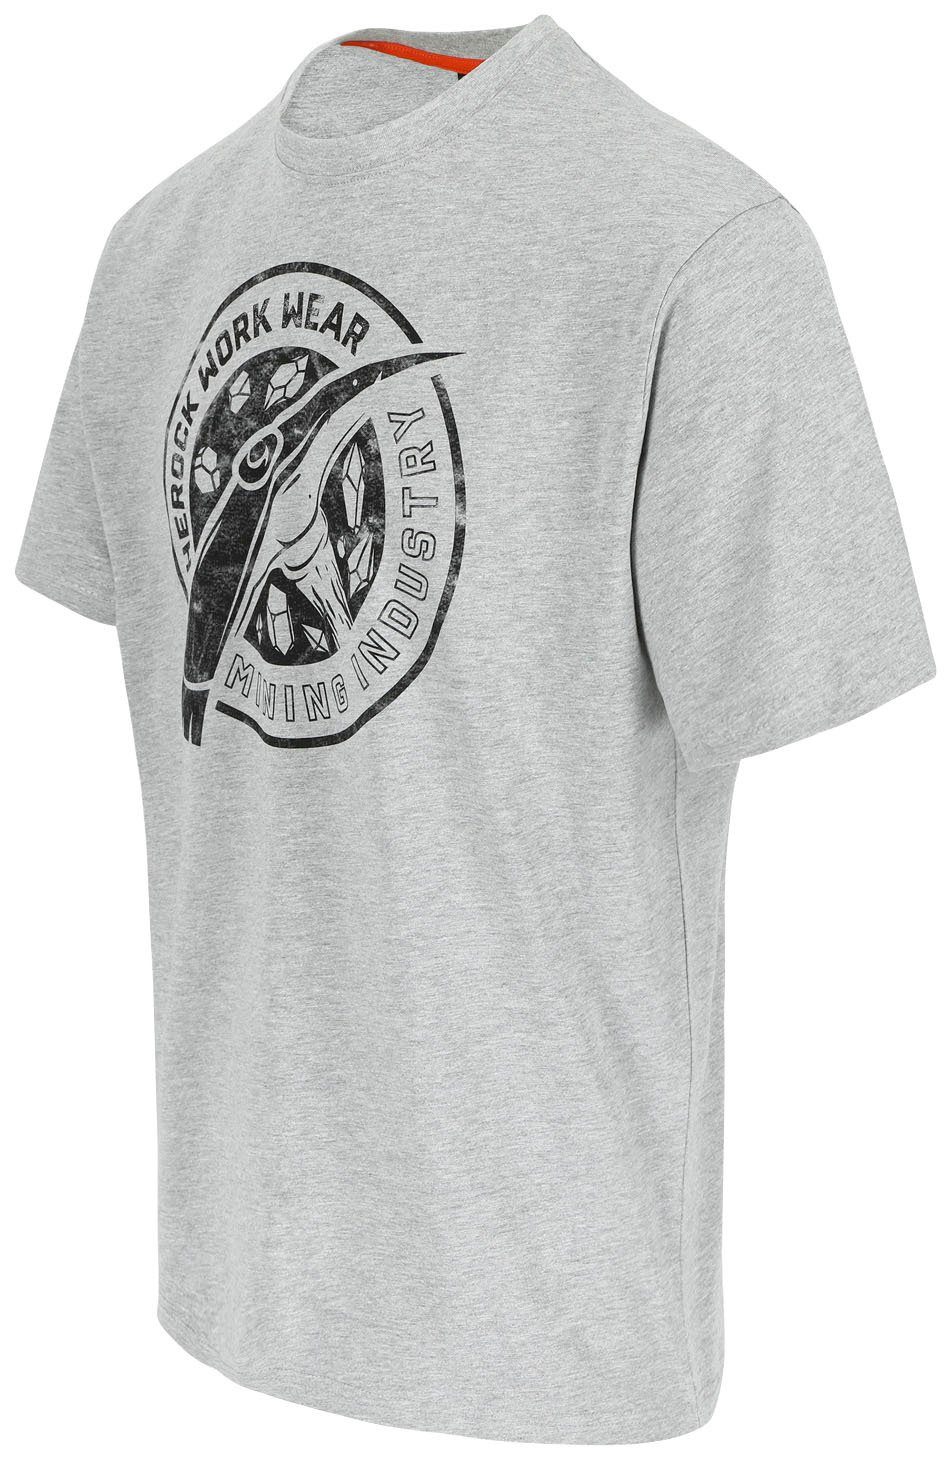 Herock T-Shirt Worker Farben in erhältlich Limited Edition, hellgrau verschiedene